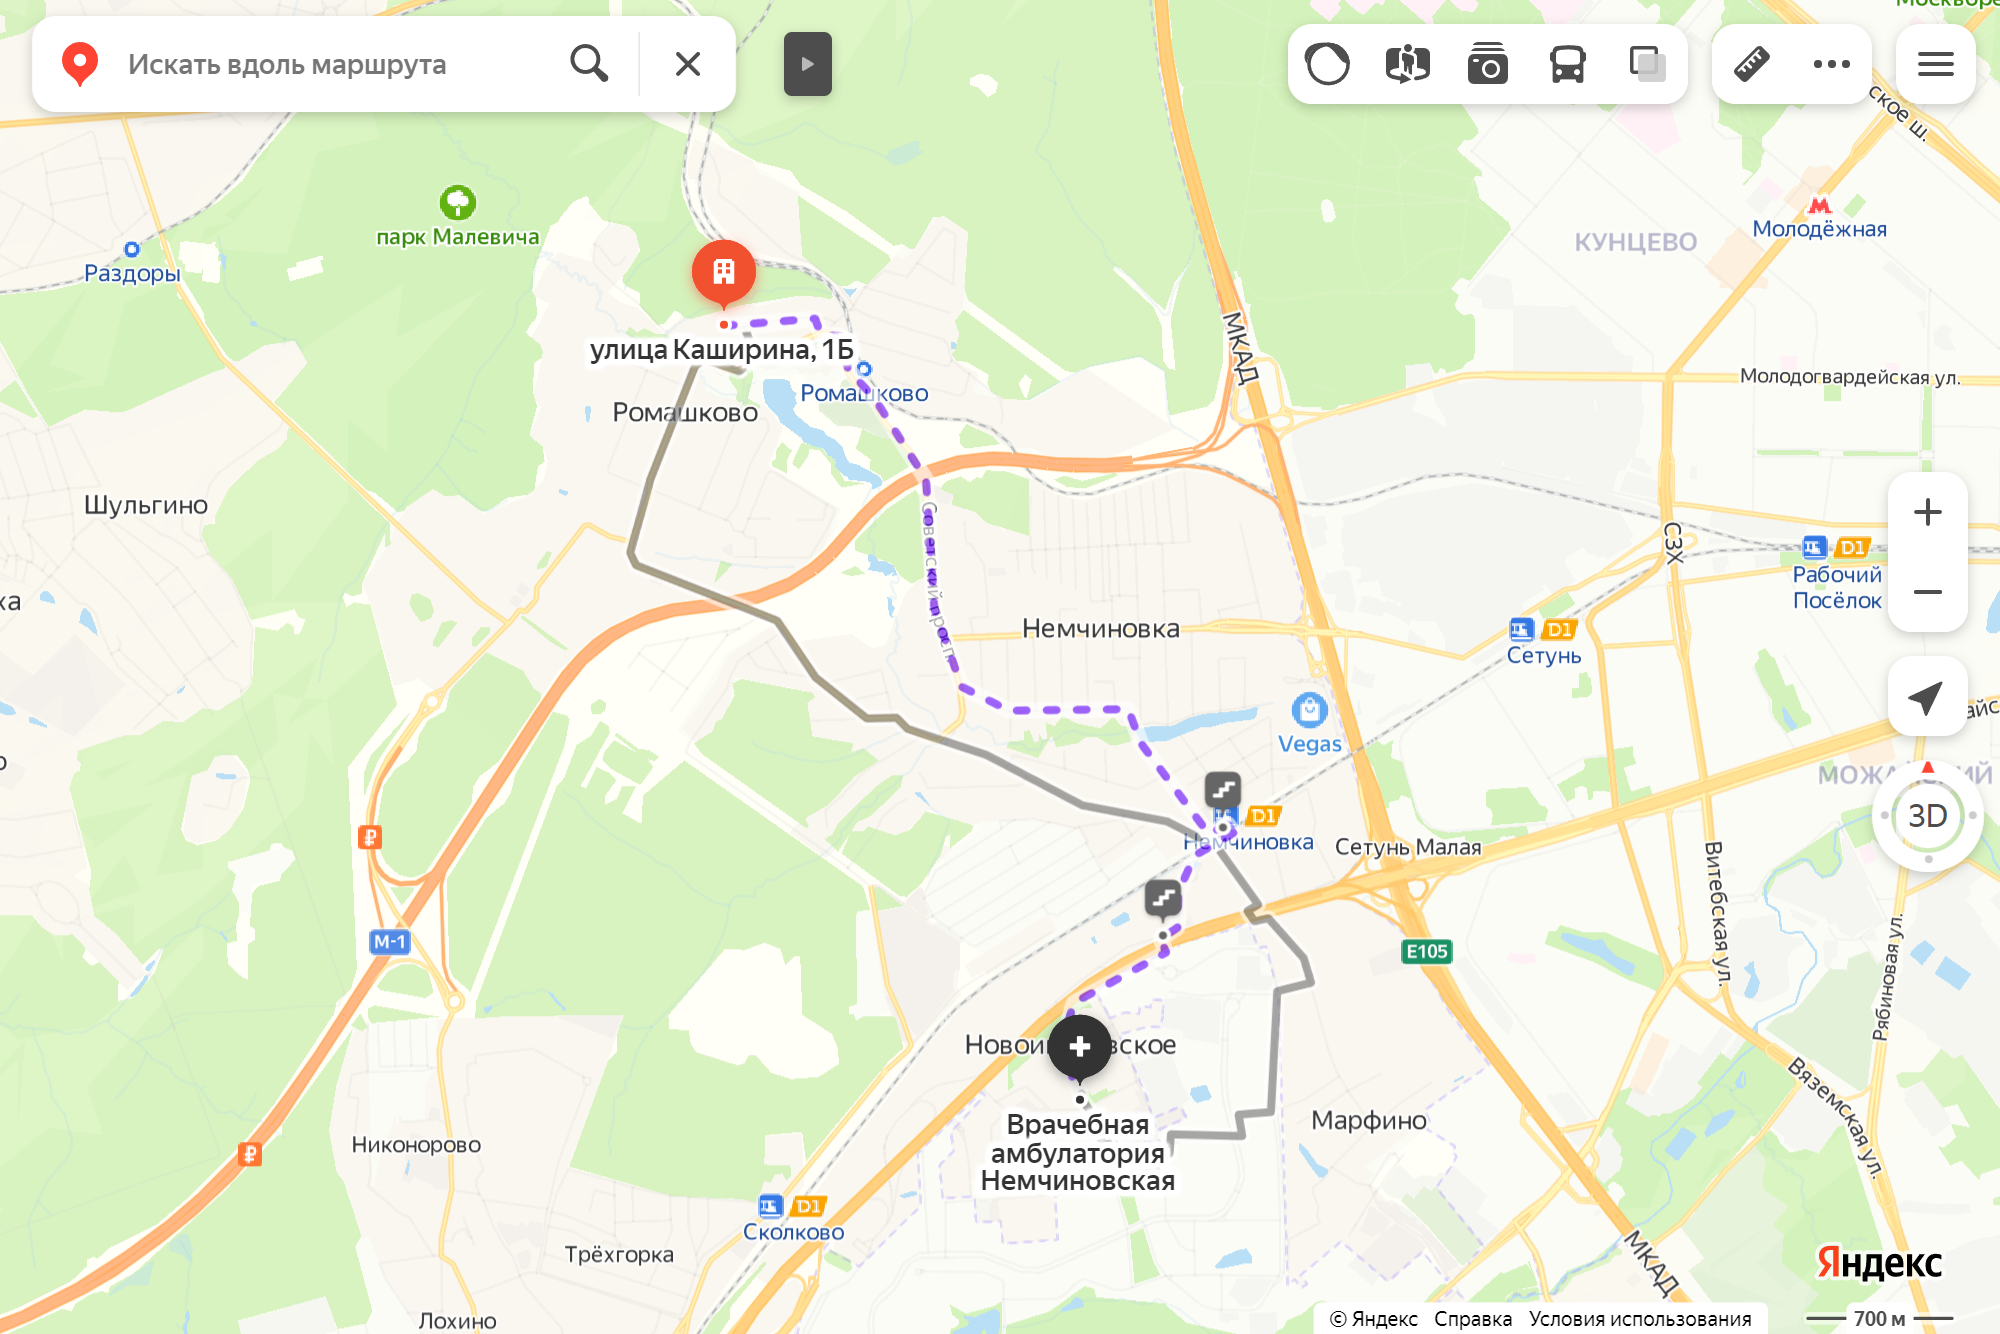 Ближайшая поликлиника сейчас в Новоивановском — это час с небольшим на маршрутках или электричках с пересадками. Источник: yandex.ru